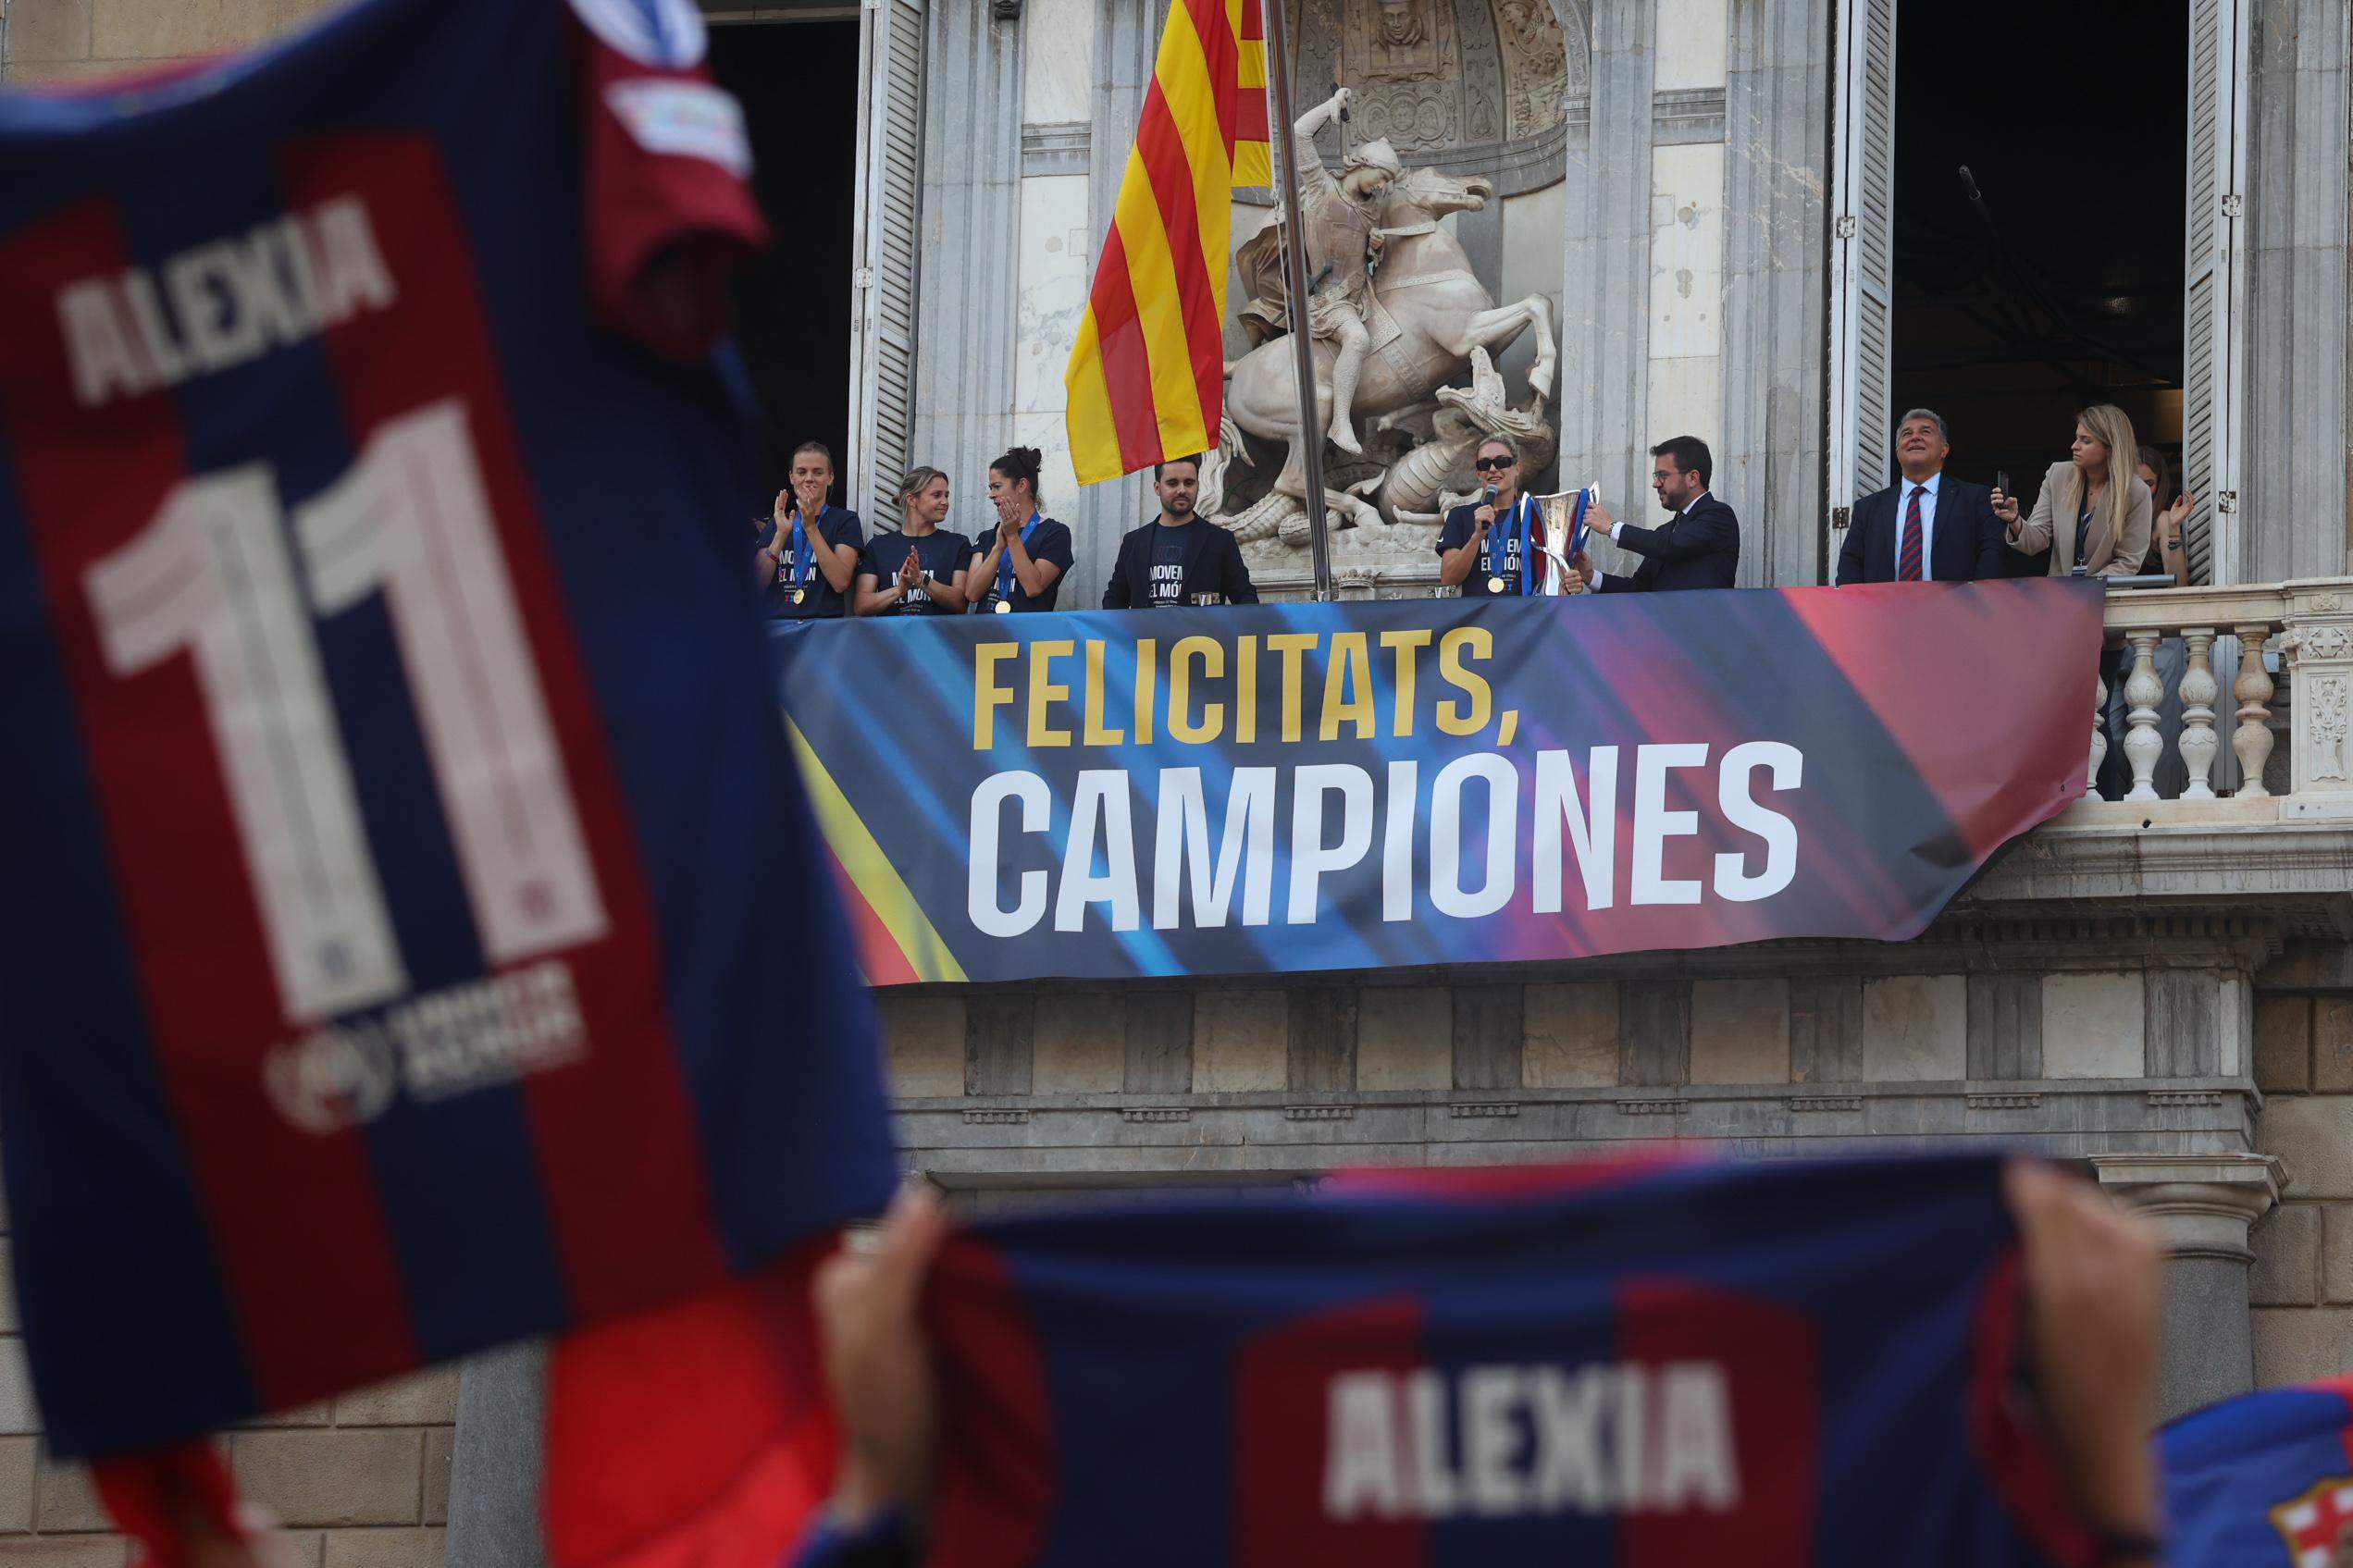 Les millors imatges del bany de masses del Barça femení a Barcelona